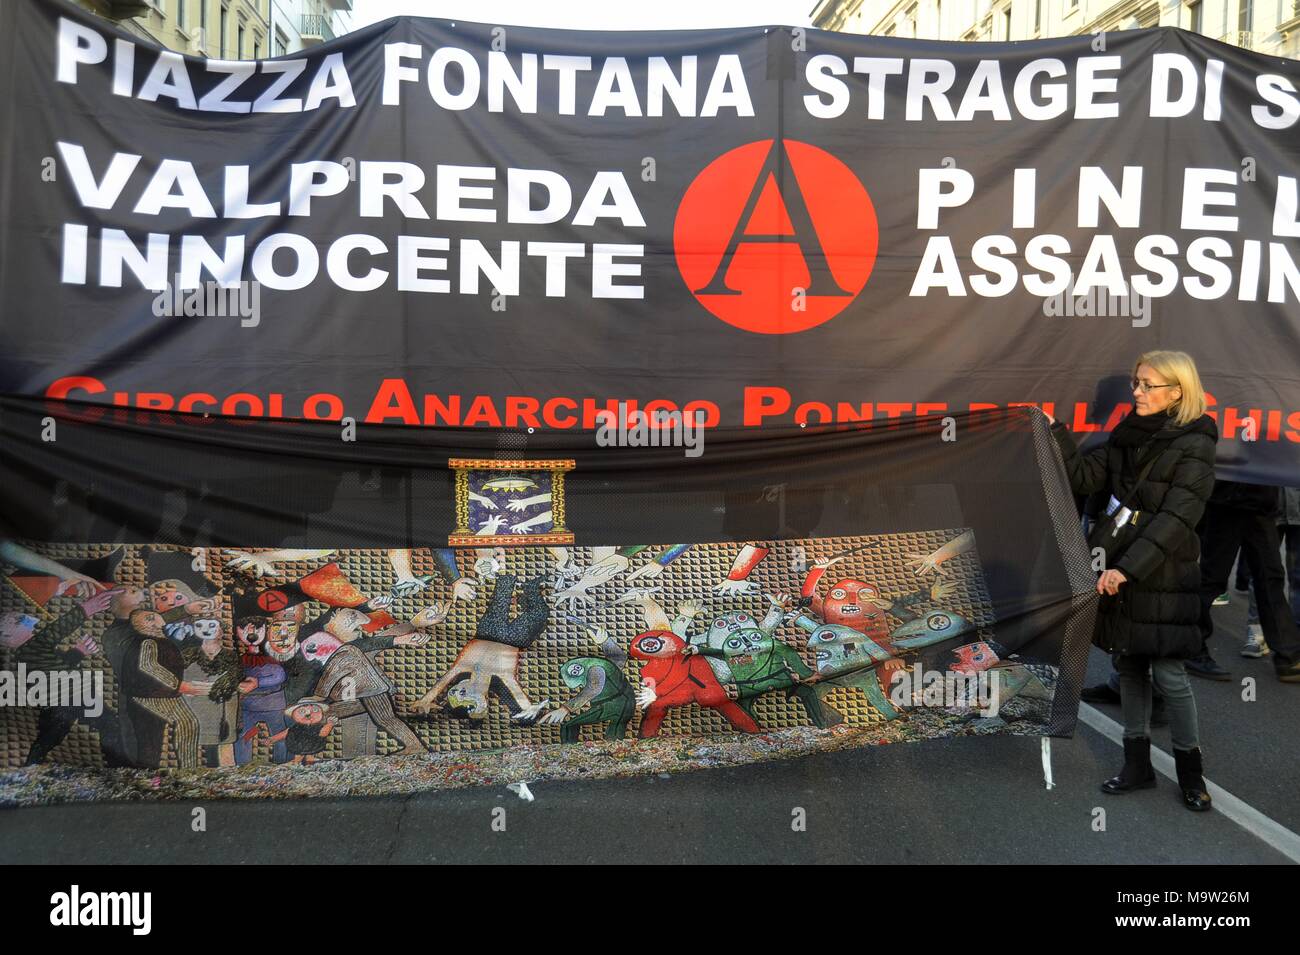 Mailand (Italien), 22. Mai 2016 - Neupositionierung in der Piazza Fontana, die Website der terroristischen Angriff auf die Landwirtschaftlichen Bank im Dezember 1969 die Plakette zu den Anarchisten Pinelli, die zu Unrecht beschuldigt wurde, das das alte ersetzt, abgenutzt von Zeit und Vandalismus Stockfoto